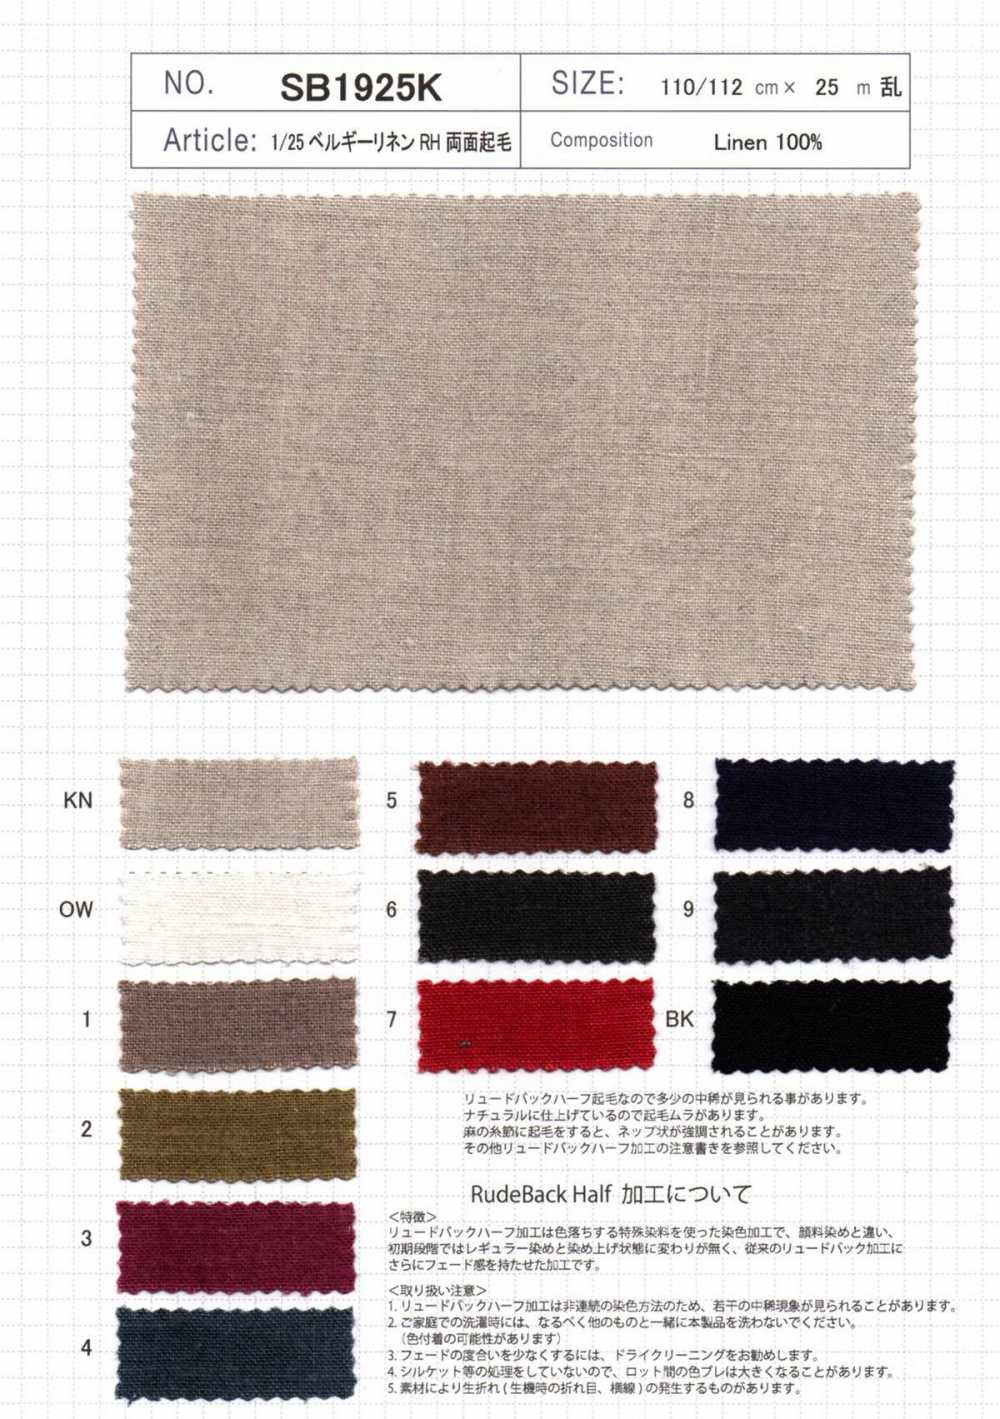 SB1925K Produktname 1/25 Belgisches Leinen RH Fuzzy Auf Beiden Seiten[Textilgewebe] SHIBAYA